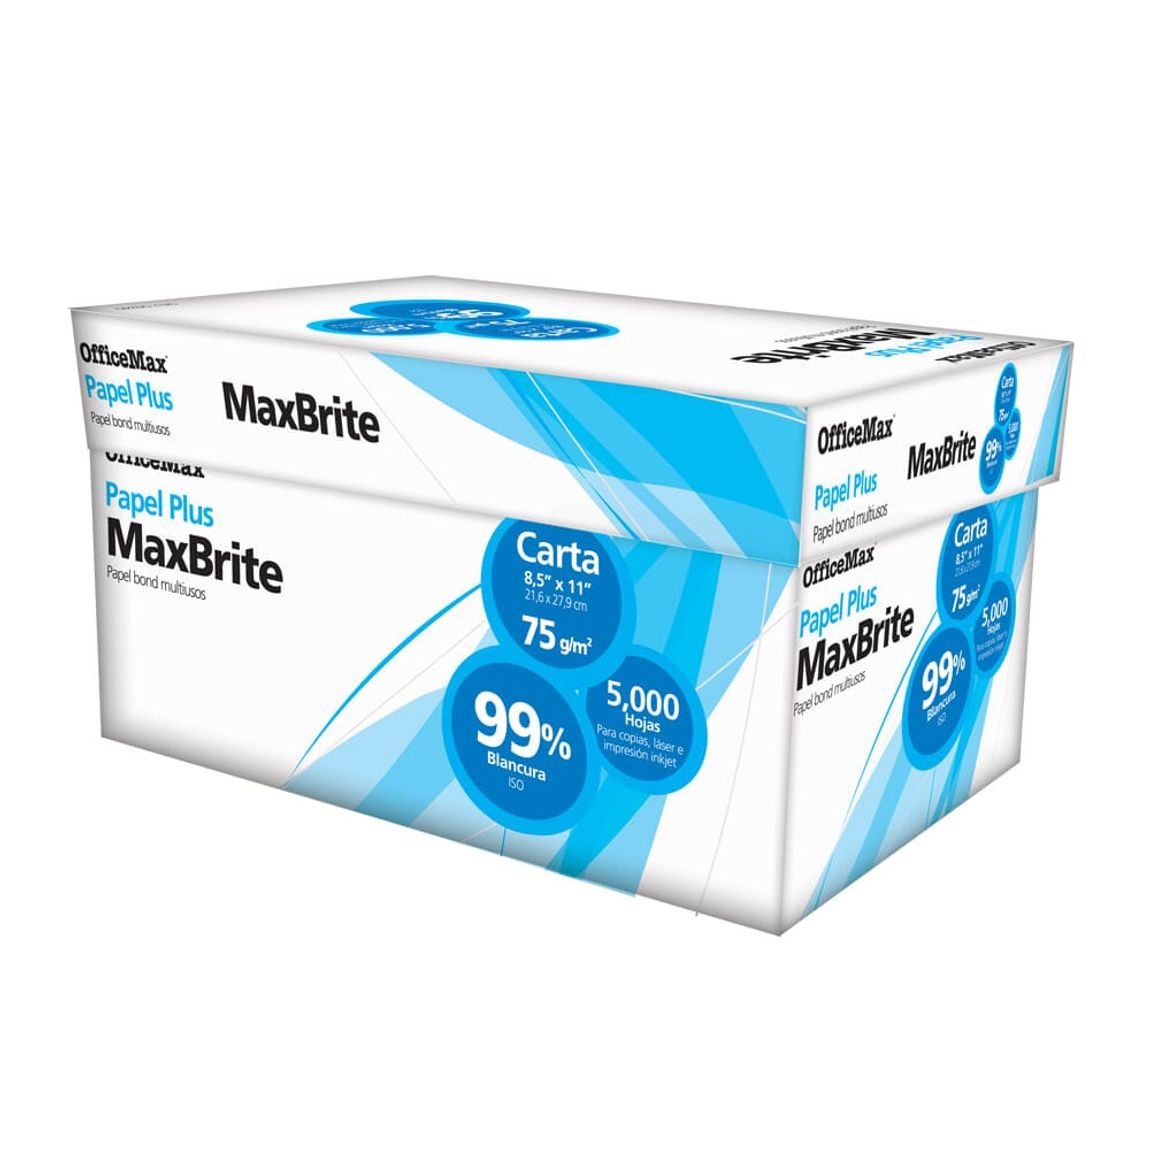 Caja de Papel Tamaño Carta OfficeMax MaxBrite 99% Blancura 5000 hojas |  Cajas y Paquetes de Papel | OfficeMax - OfficeMax